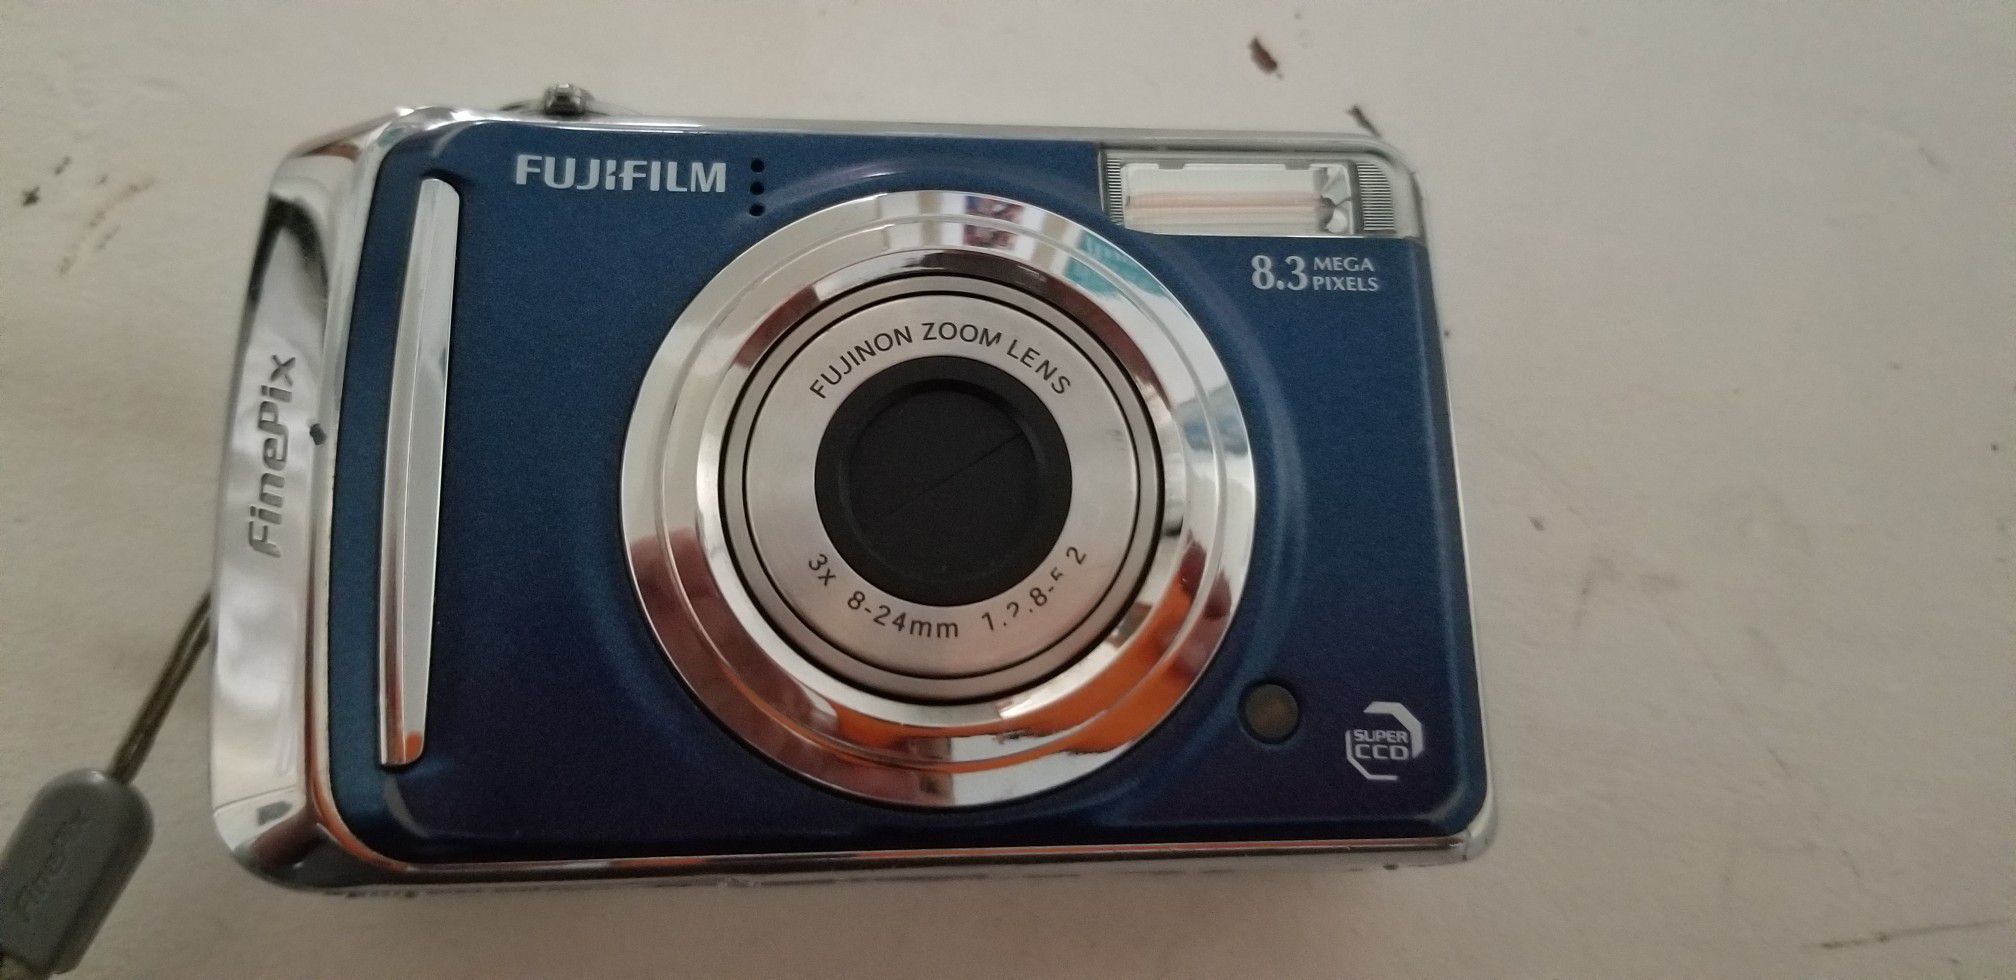 Fuji Digital Camera